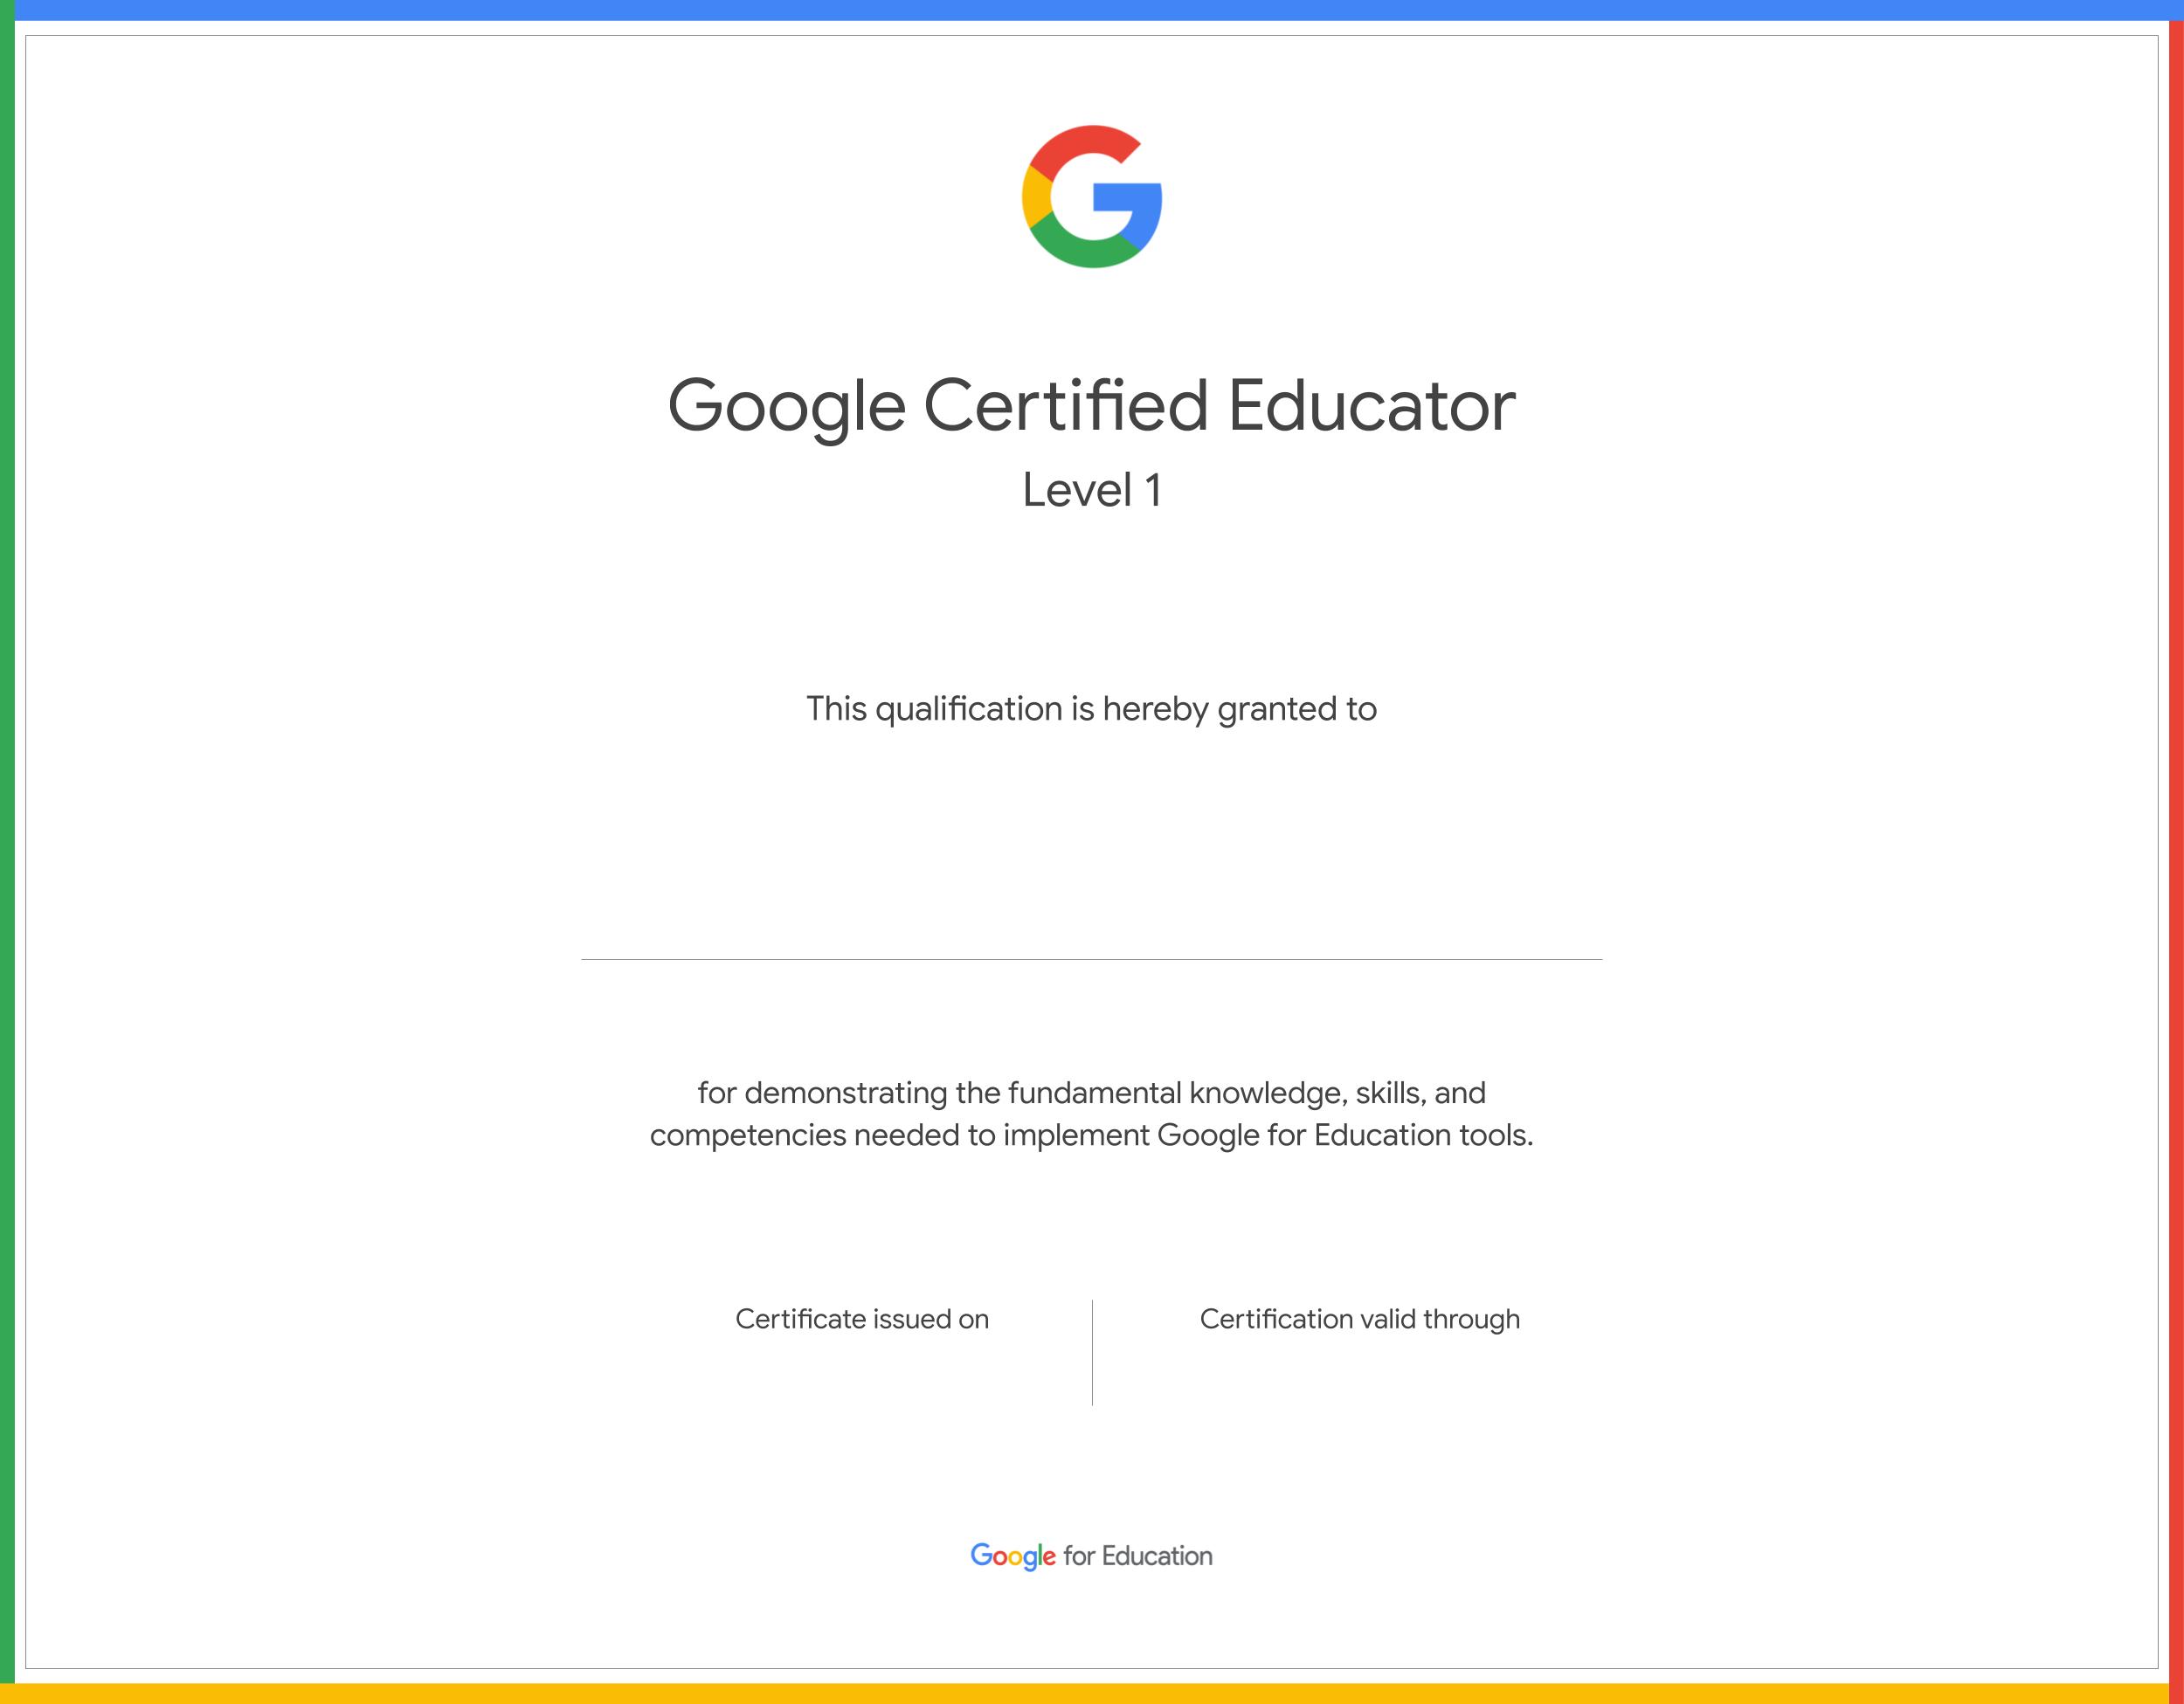  Paano Maging Isang Google Certified Educator?